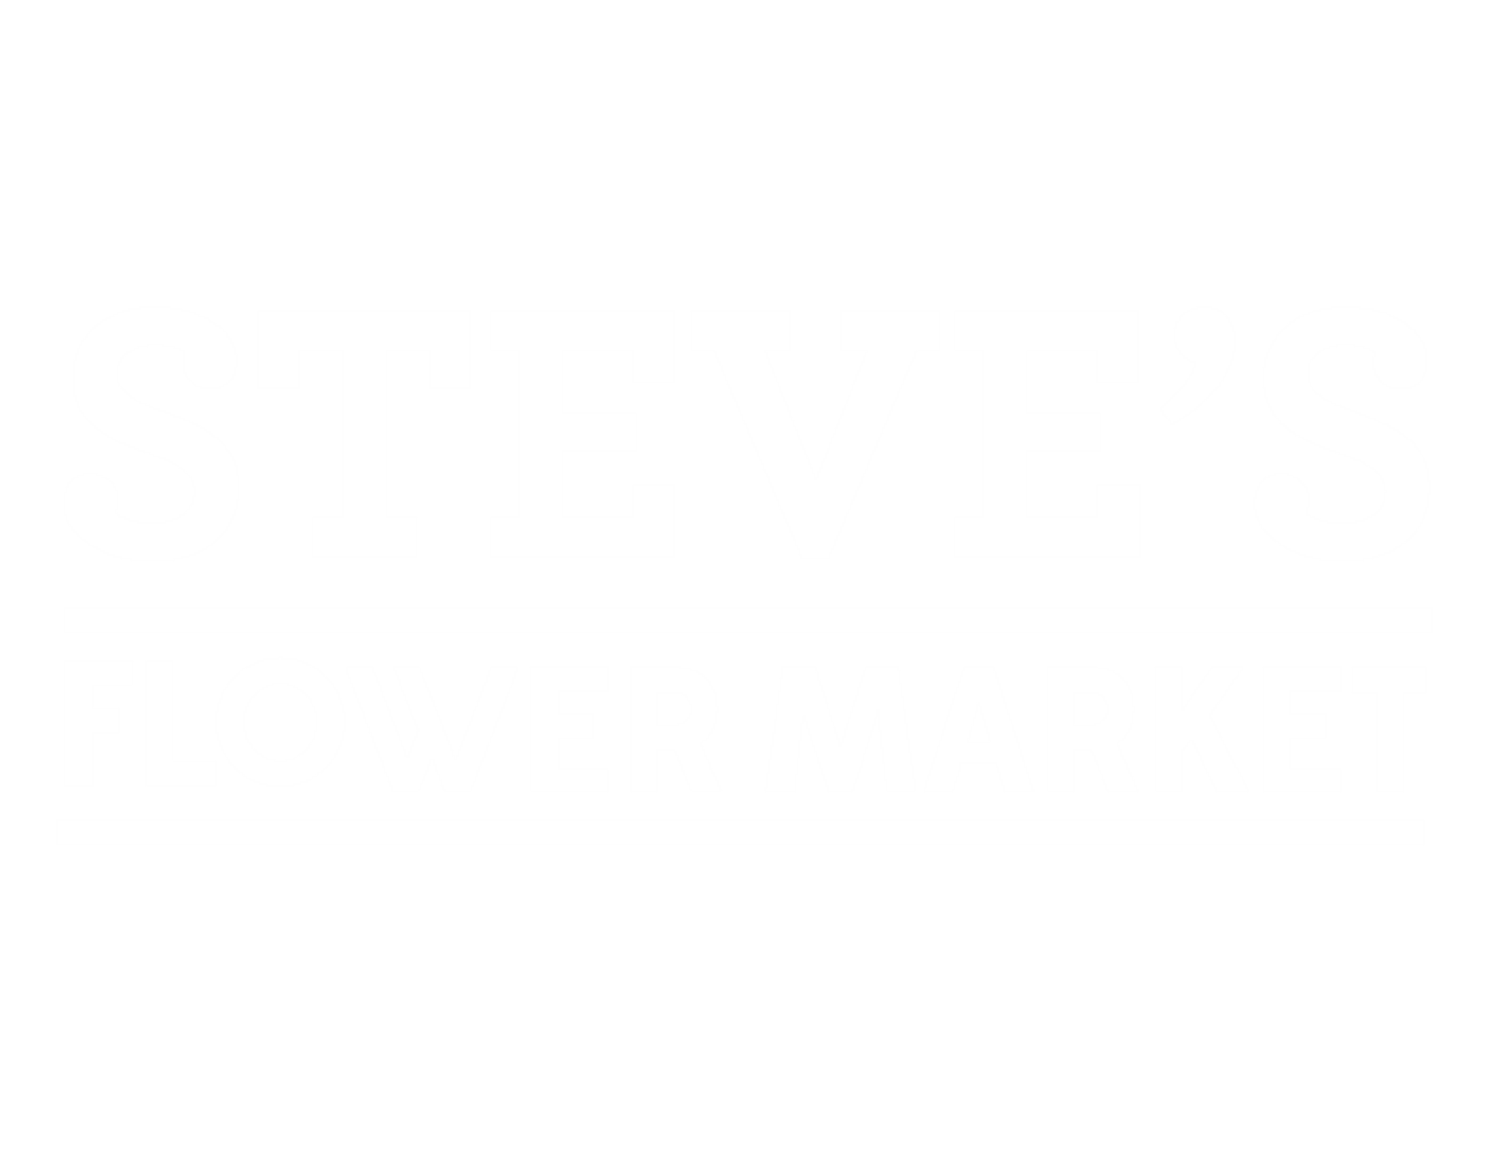 Steve's Flower Market